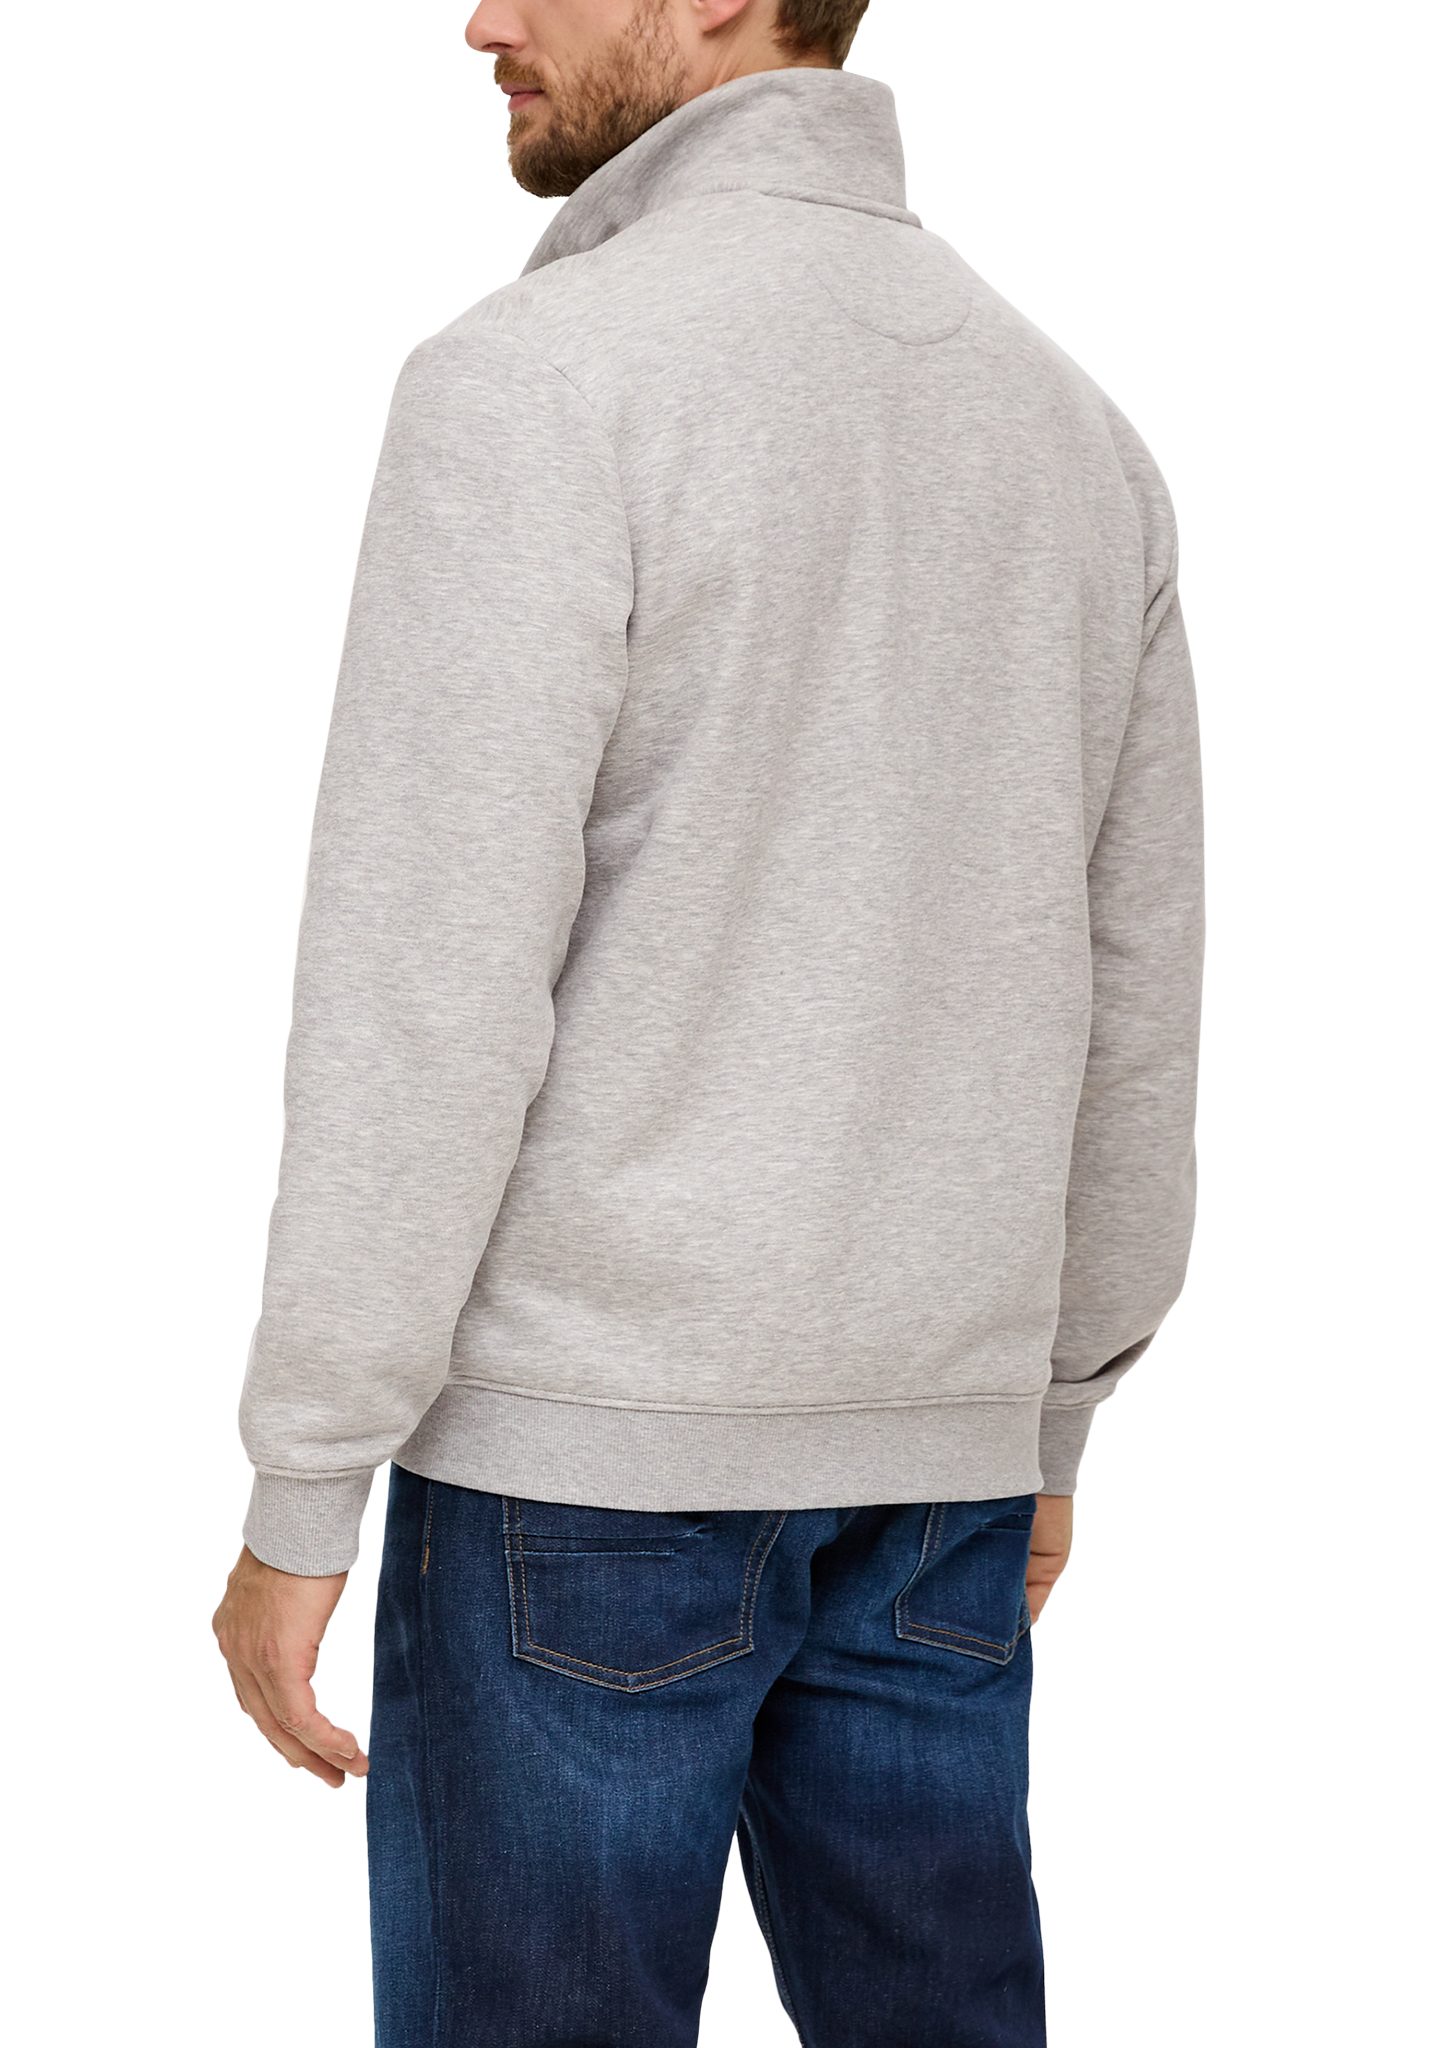 meliert Logo, grau mit Sweatshirt-Jacke Streifen-Detail Allwetterjacke Stehkragen s.Oliver